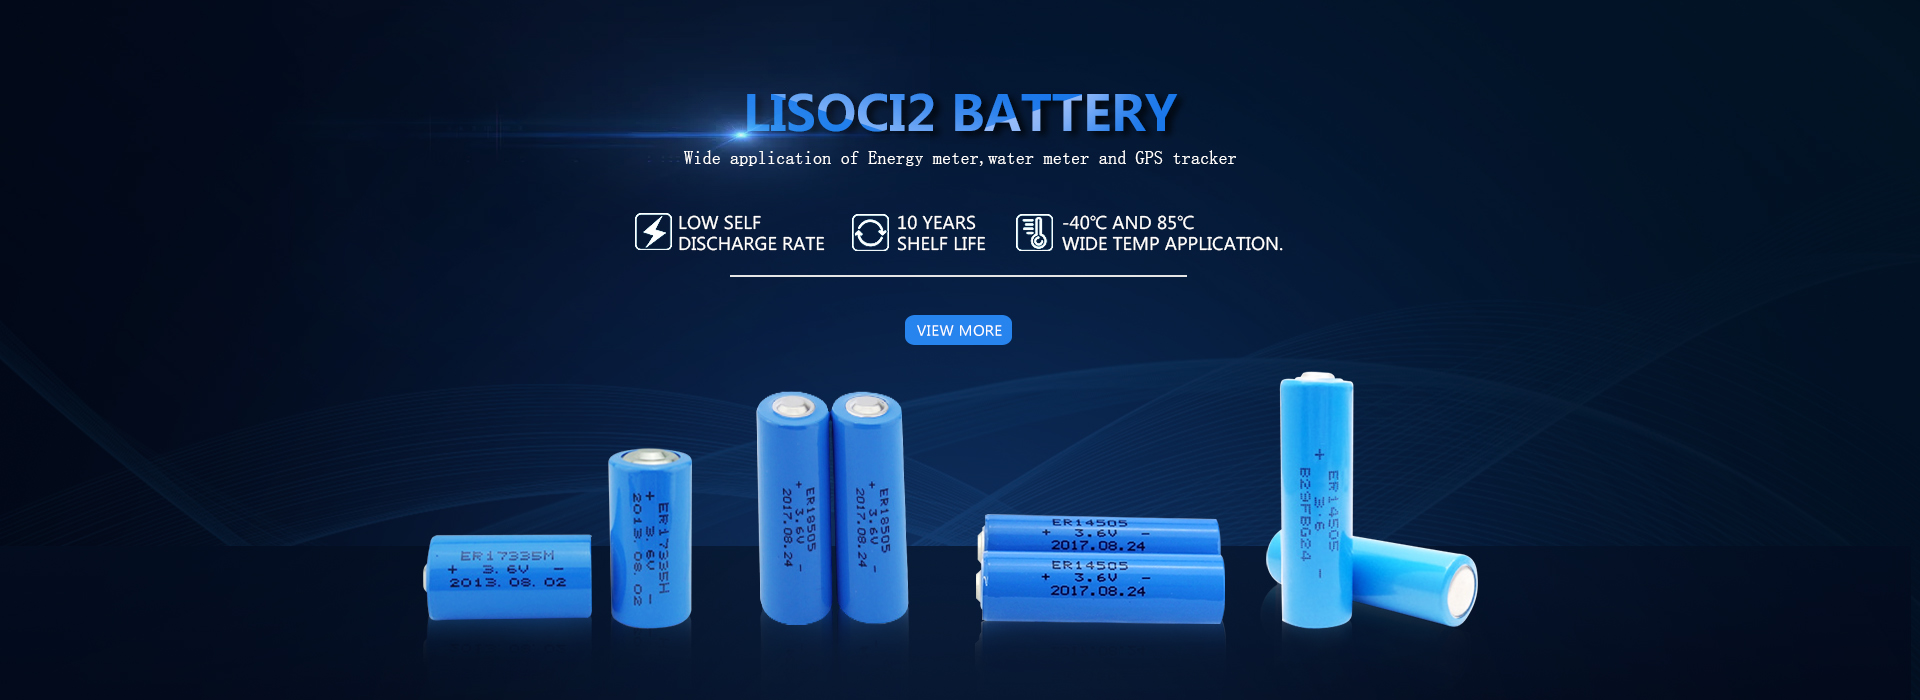 LiSoci2 Производители